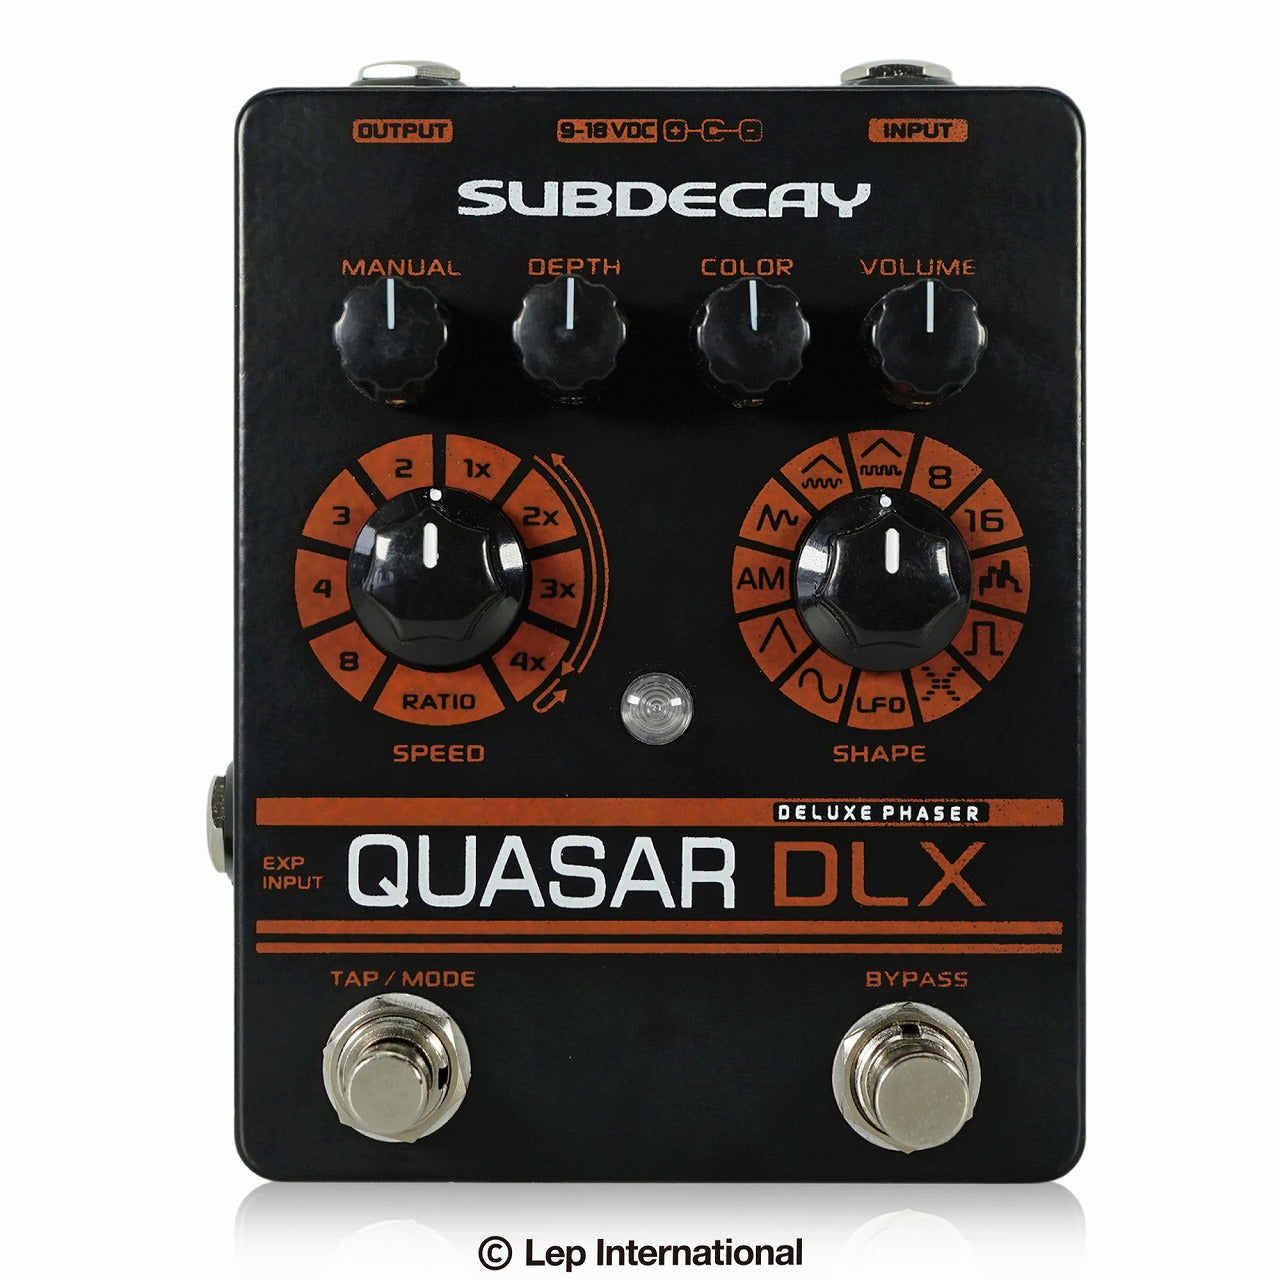 Subdecay/Quasar DLX